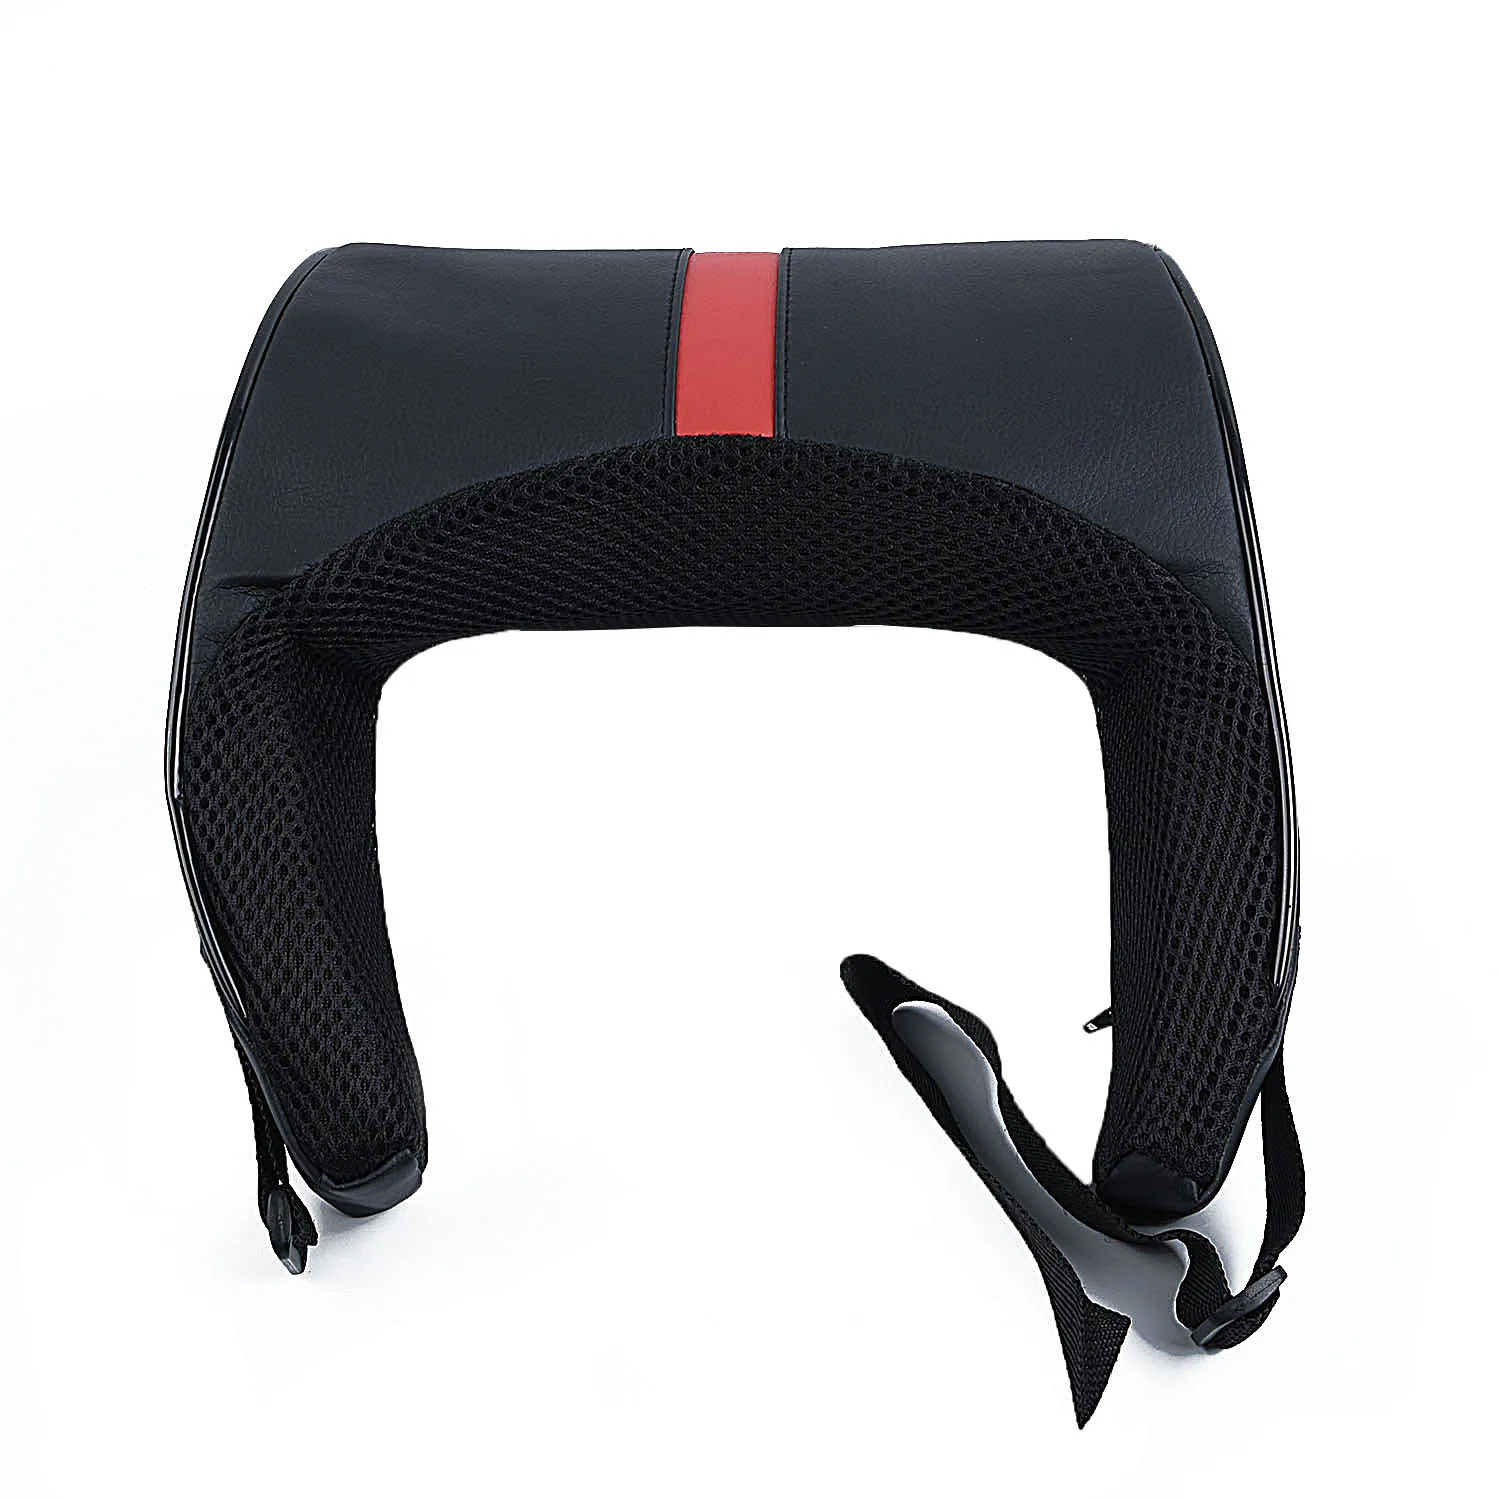 Новая регулируемая Автомобильная подушка из искусственной кожи с эффектом памяти, Автомобильная подушка, подголовник для сиденья, черный+ красный цвет